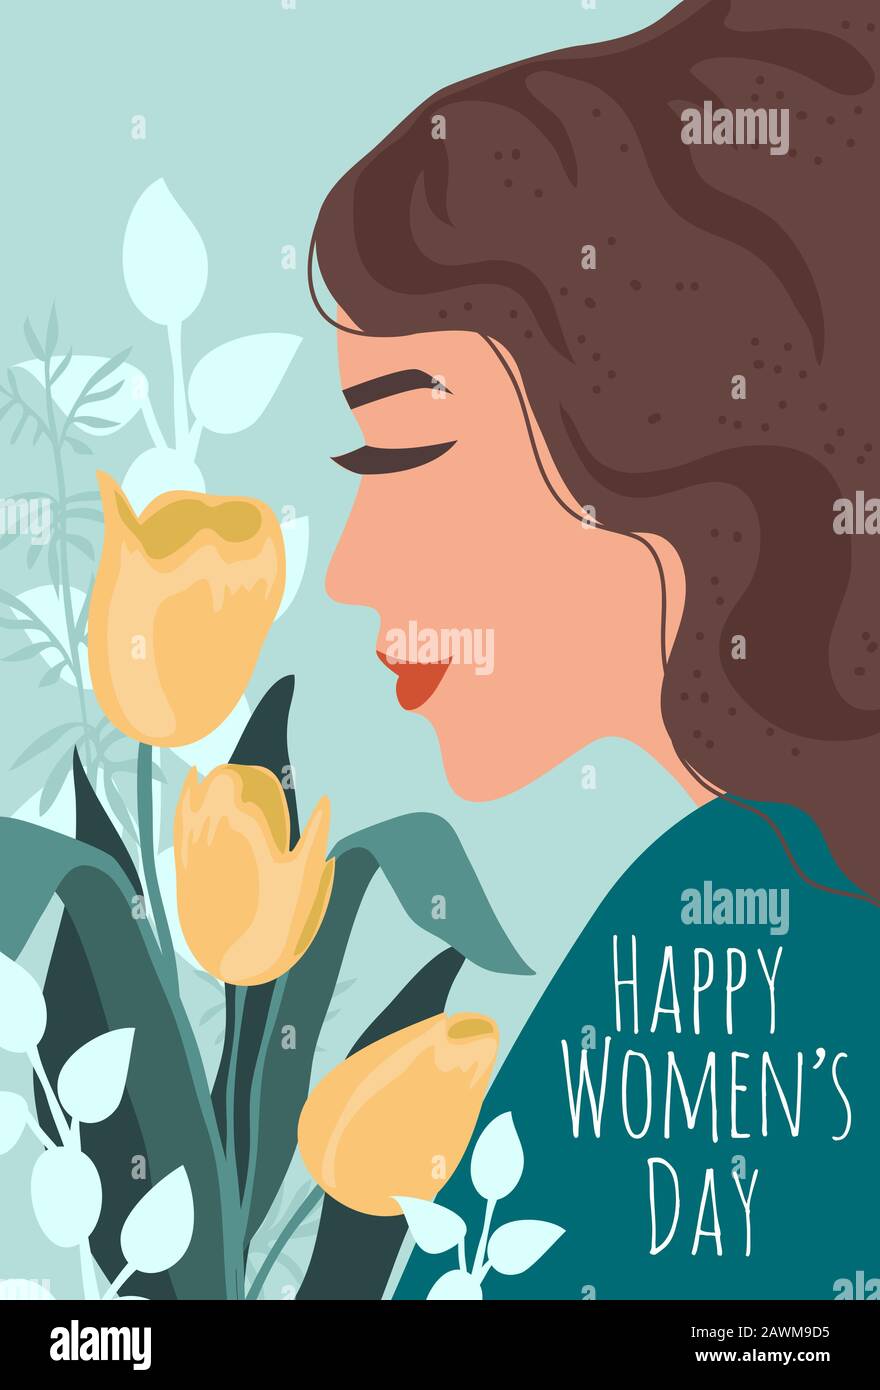 Journée Internationale De La Femme. Illustration vectorielle mignonne avec visage de femme et bouquet de fleurs pour carte, affiche, flyer et autre Illustration de Vecteur